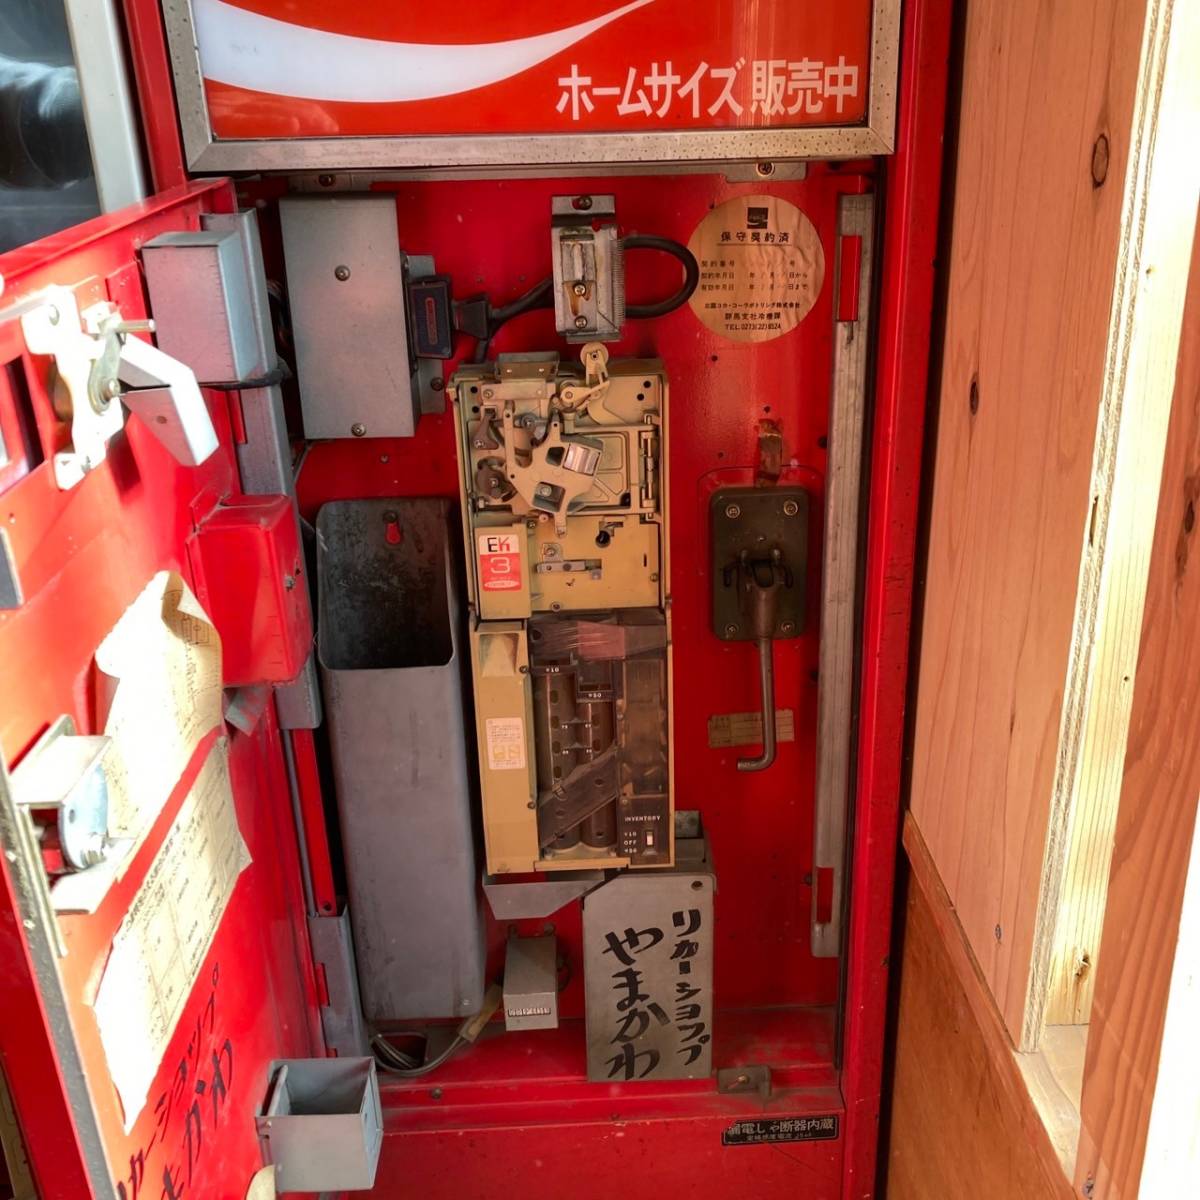 [ редкий ] Sanyo SANYO Coca * Cola Coca Cola бутылка специальный автоматика распродажа машина SVM-E64 D электризация OK Showa Retro античный редкость собственный . машина [ самовывоз ограничение ]